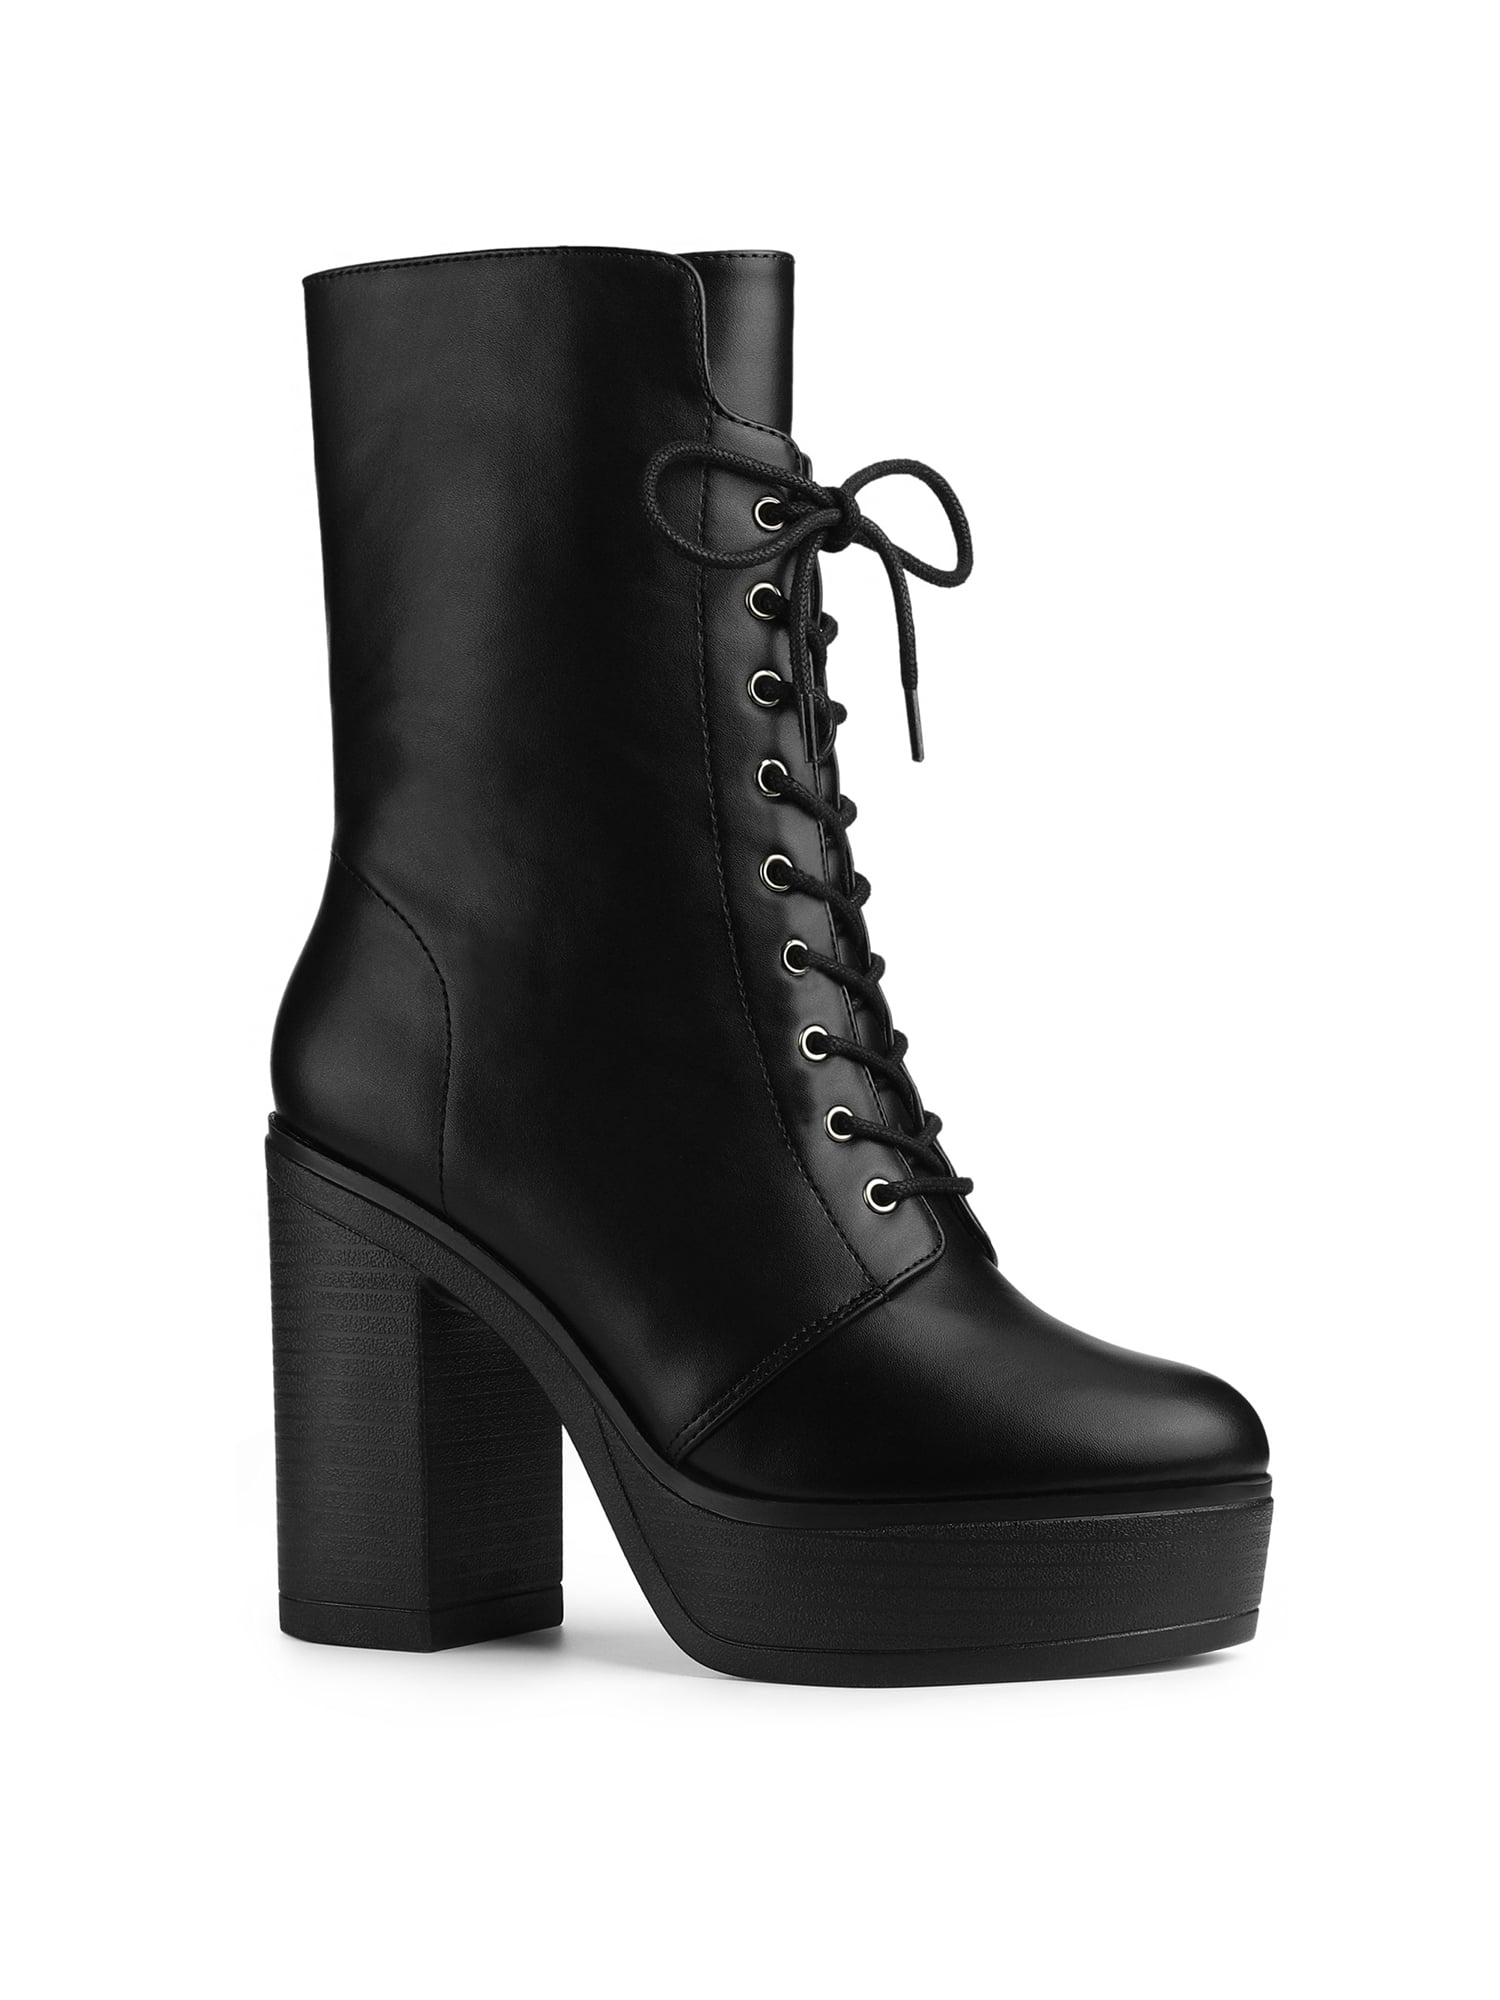 Black Block Heel Combat Boots | Heeled combat boots, Heels, Boots